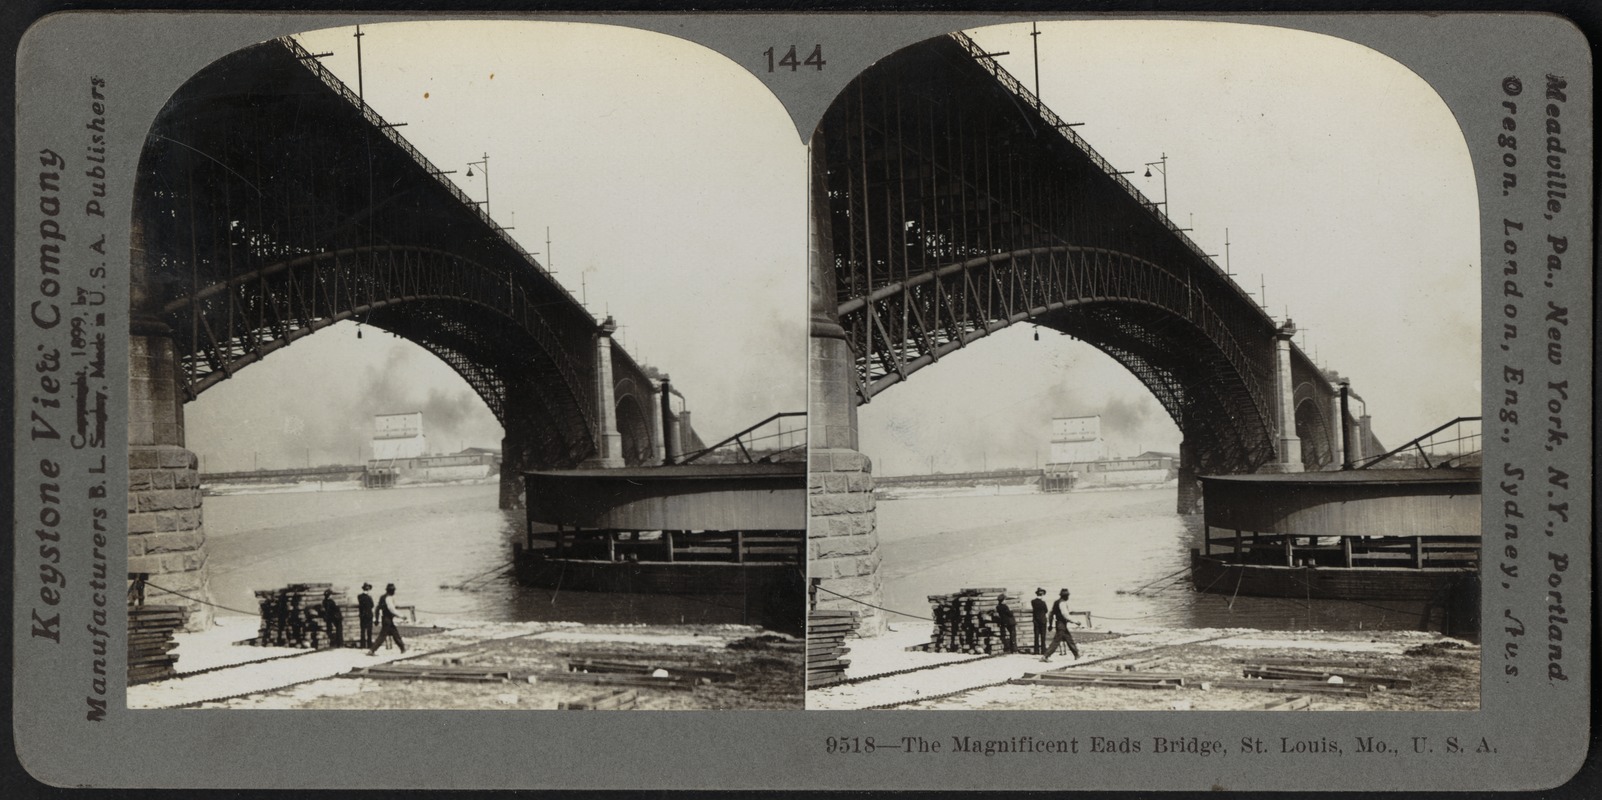 The magnificent Eads Bridge, St. Louis, Mo., U.S.A.